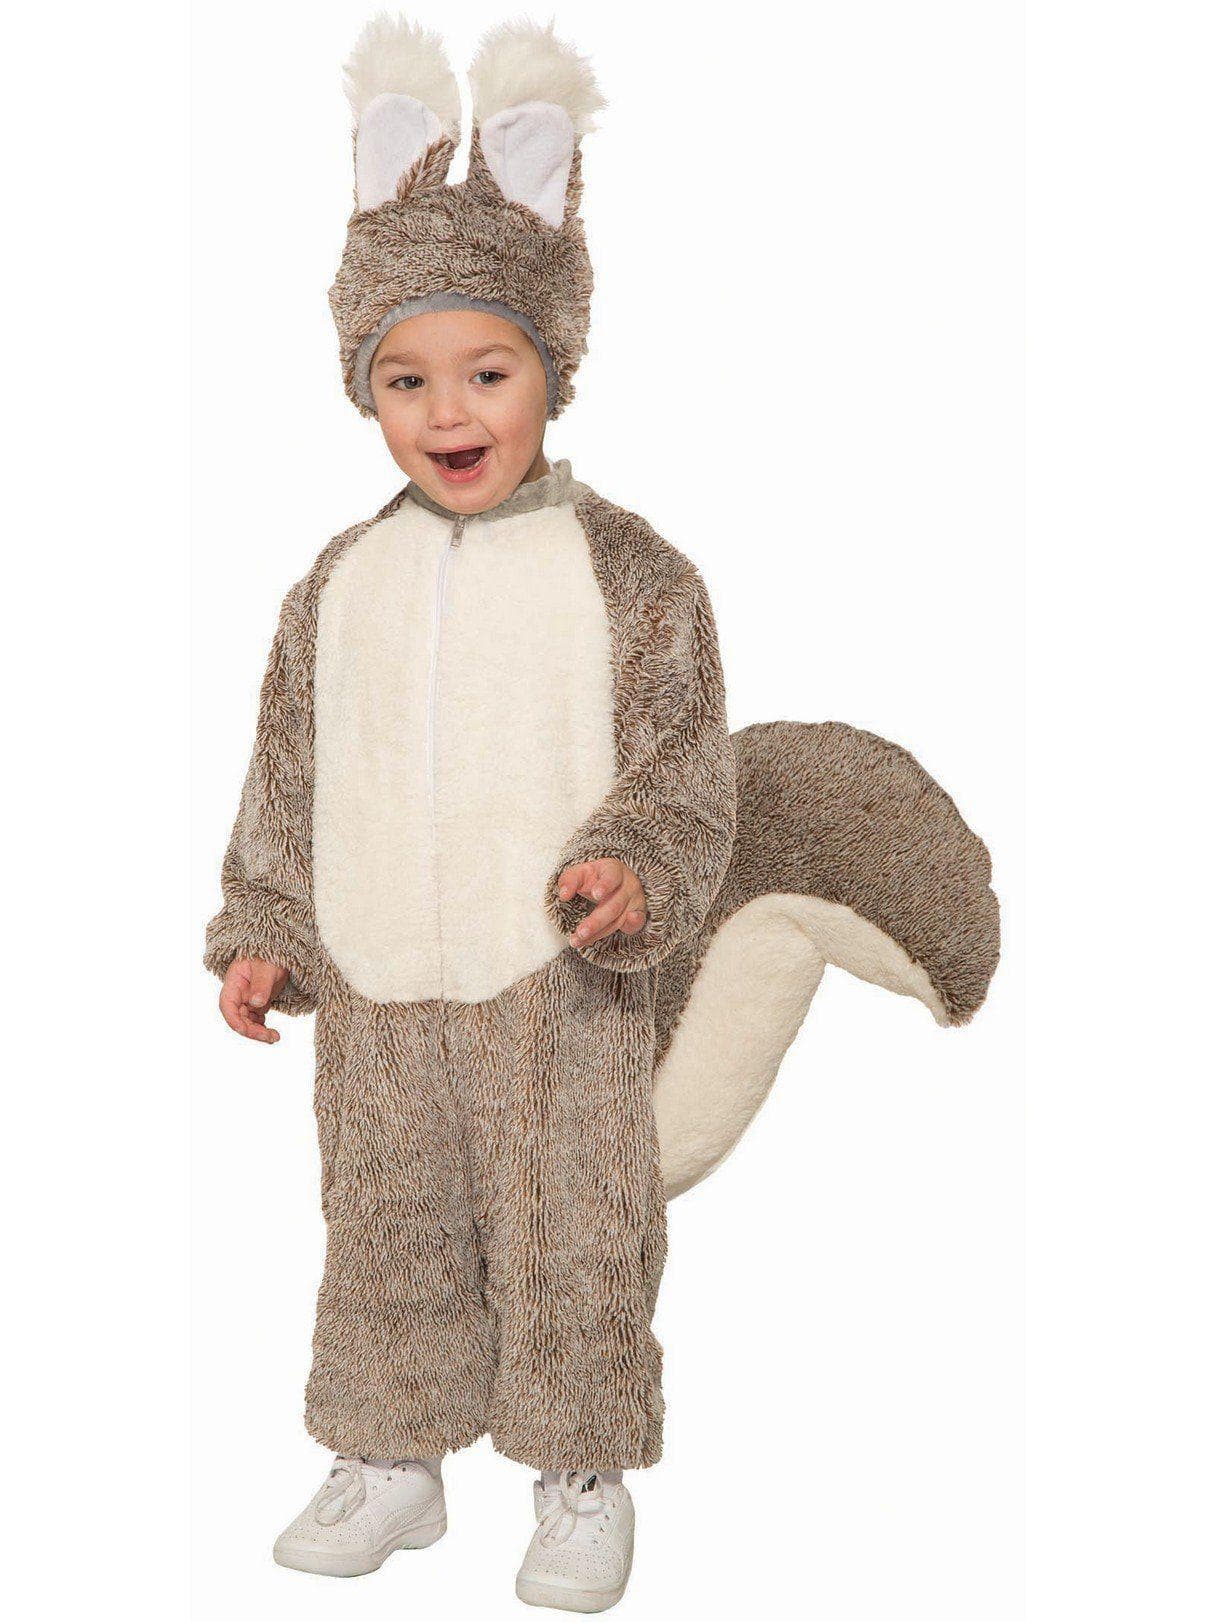 Kid's Squirrel Costume - costumes.com